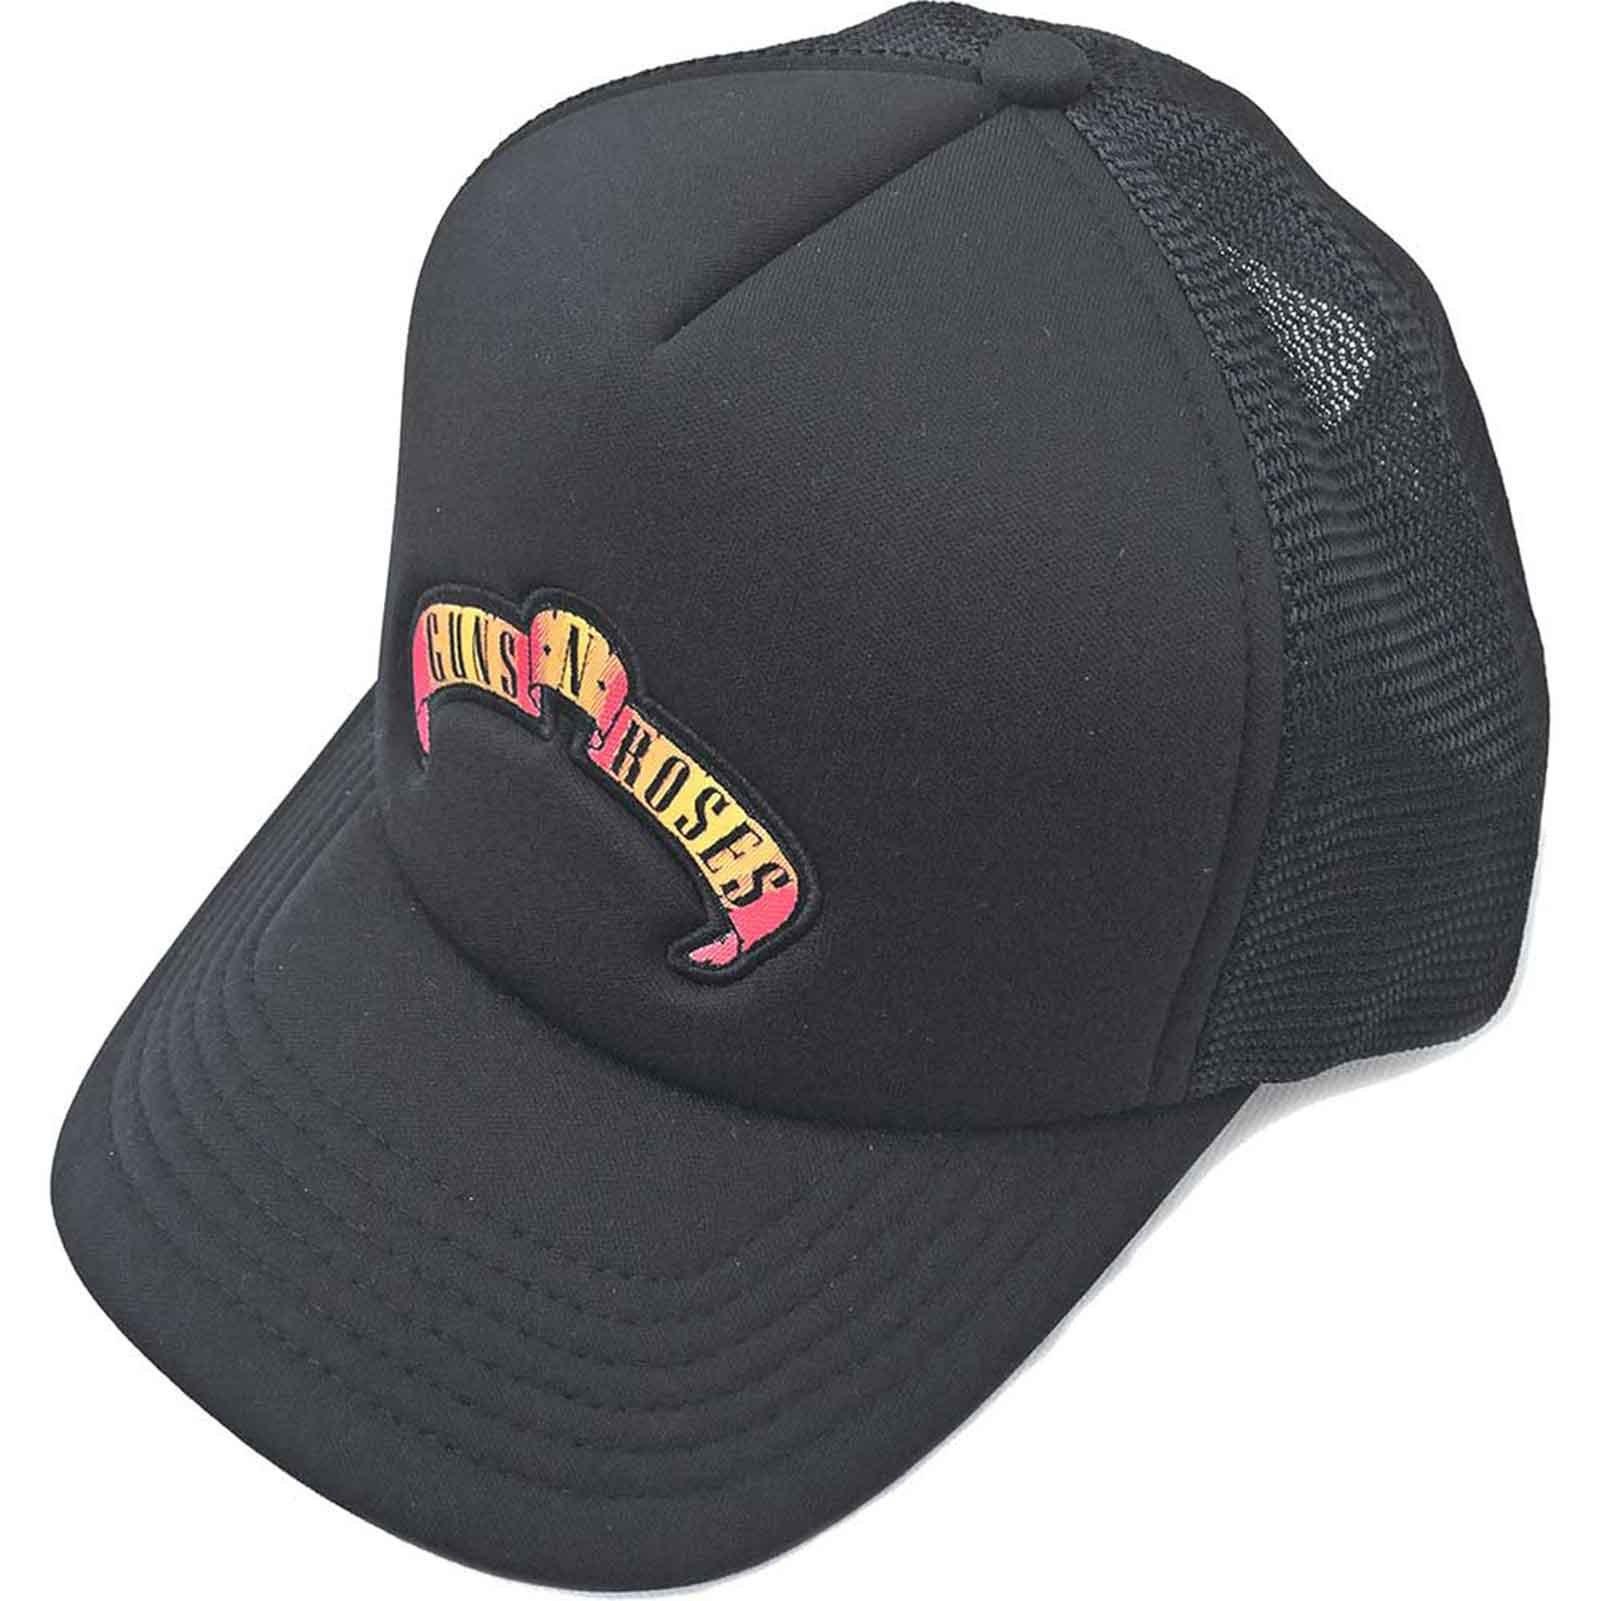 Бейсболка Trucker с полосой прокрутки и логотипом Guns N Roses, черный мешок для сменной обуви guns n roses 2